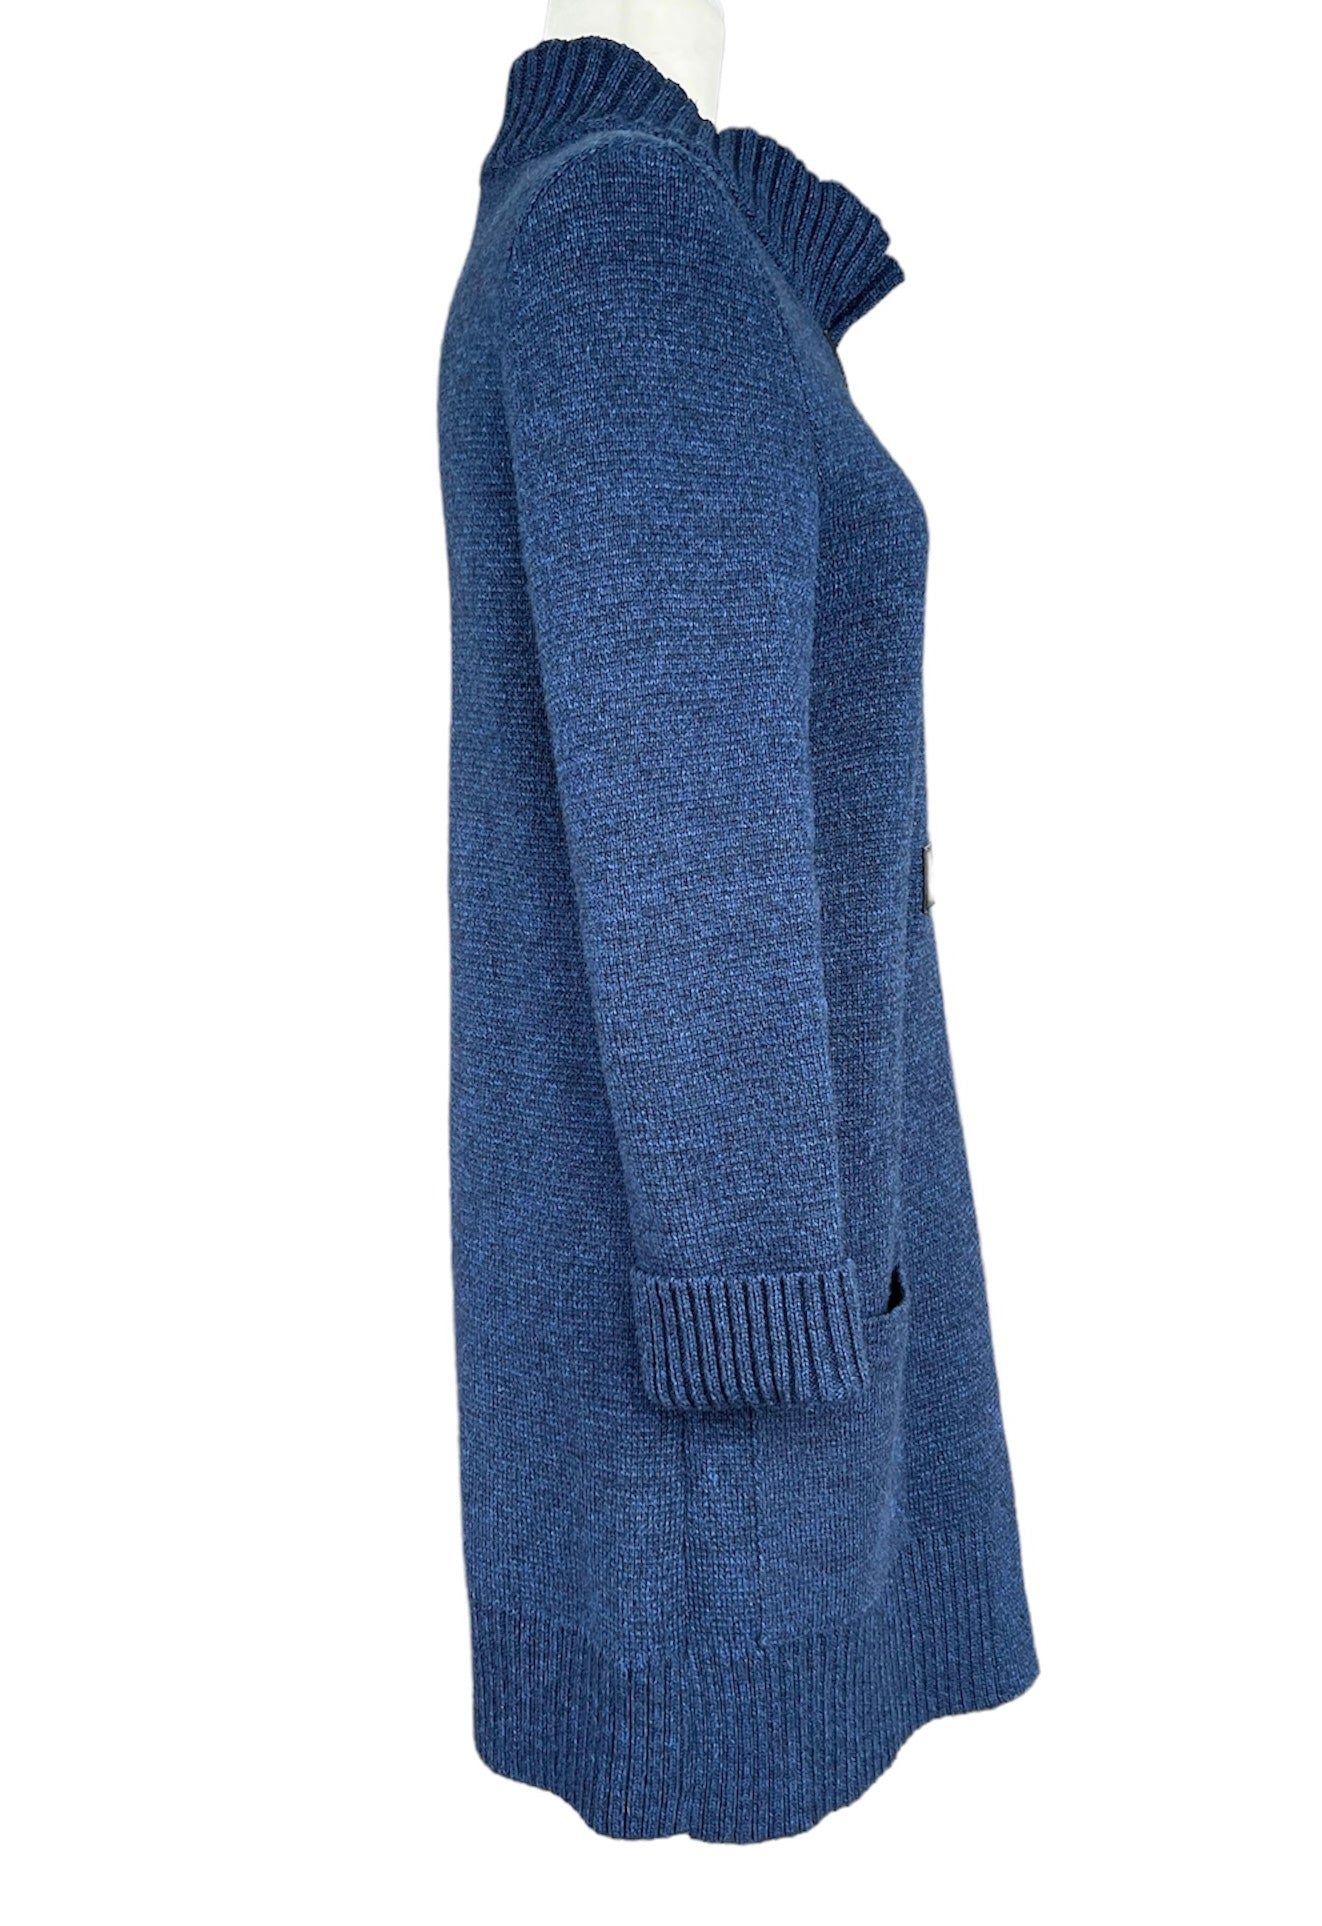 Saint James Long Blue Buckle Duster Sweater, S/M